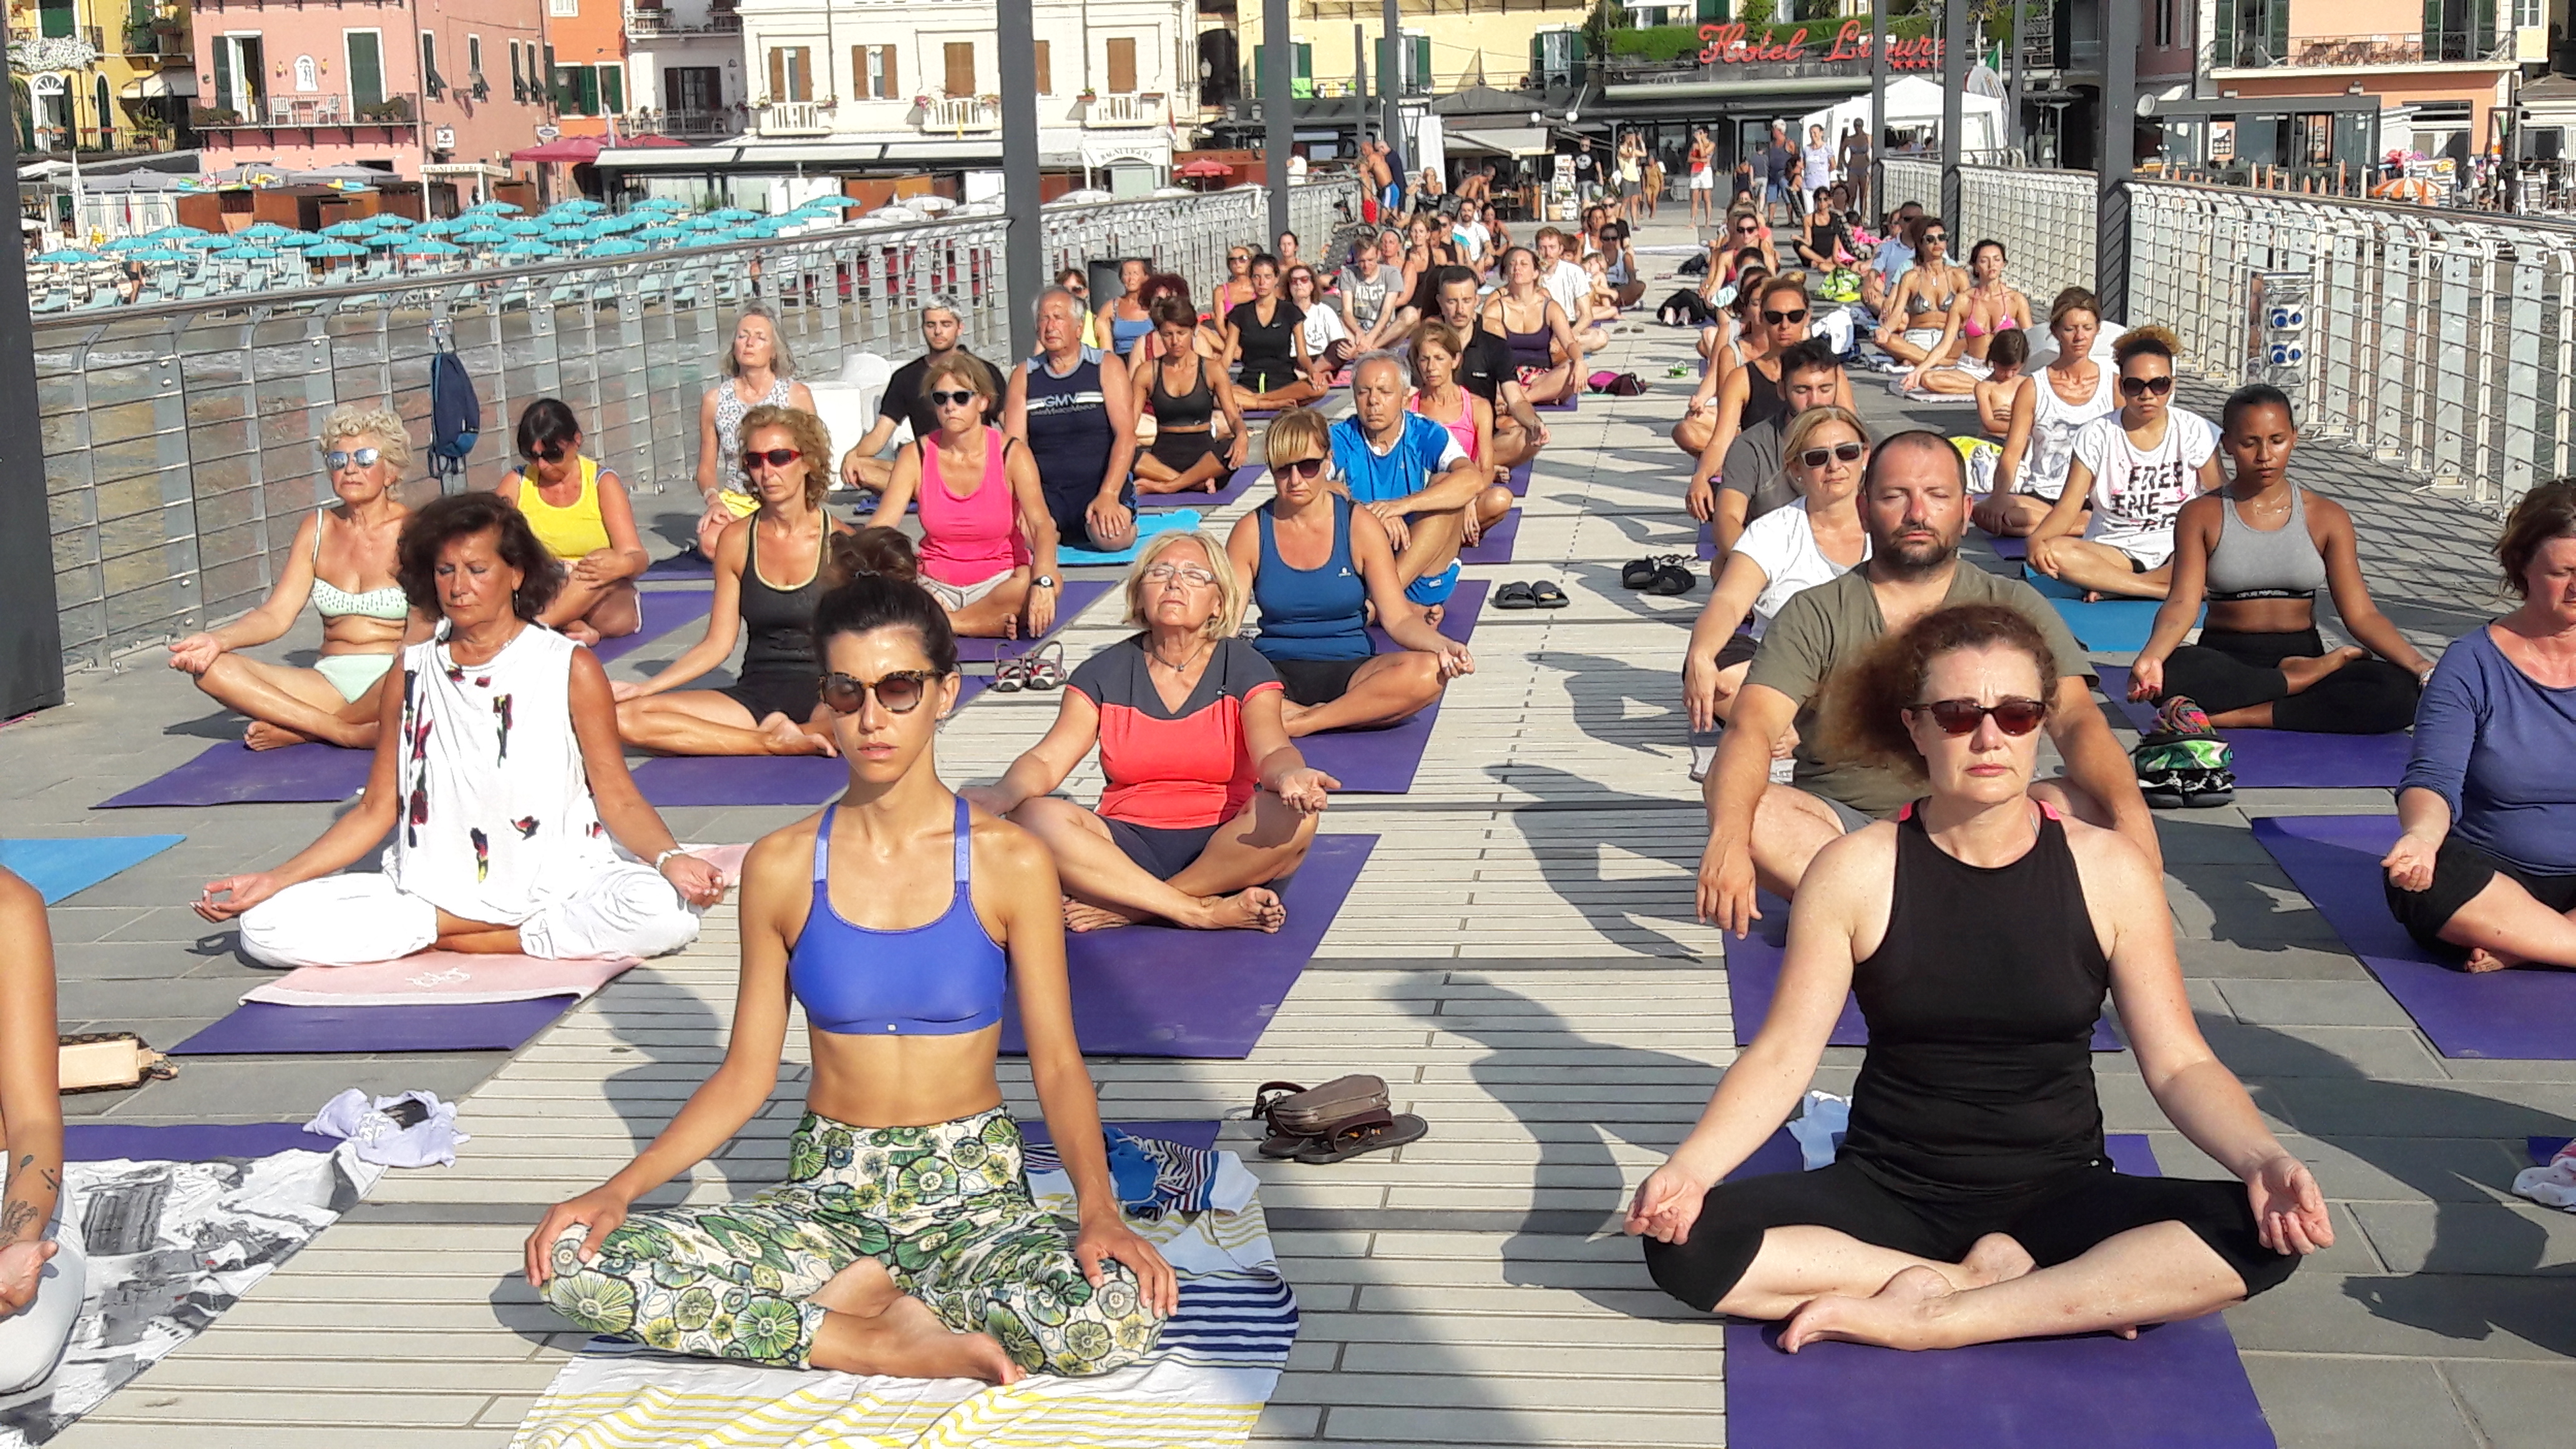 essere-free-yoga-gratuito-benessere-per-tutti-village-citta-alassio-estate-lucia-ragazzi-summer-town-wellness